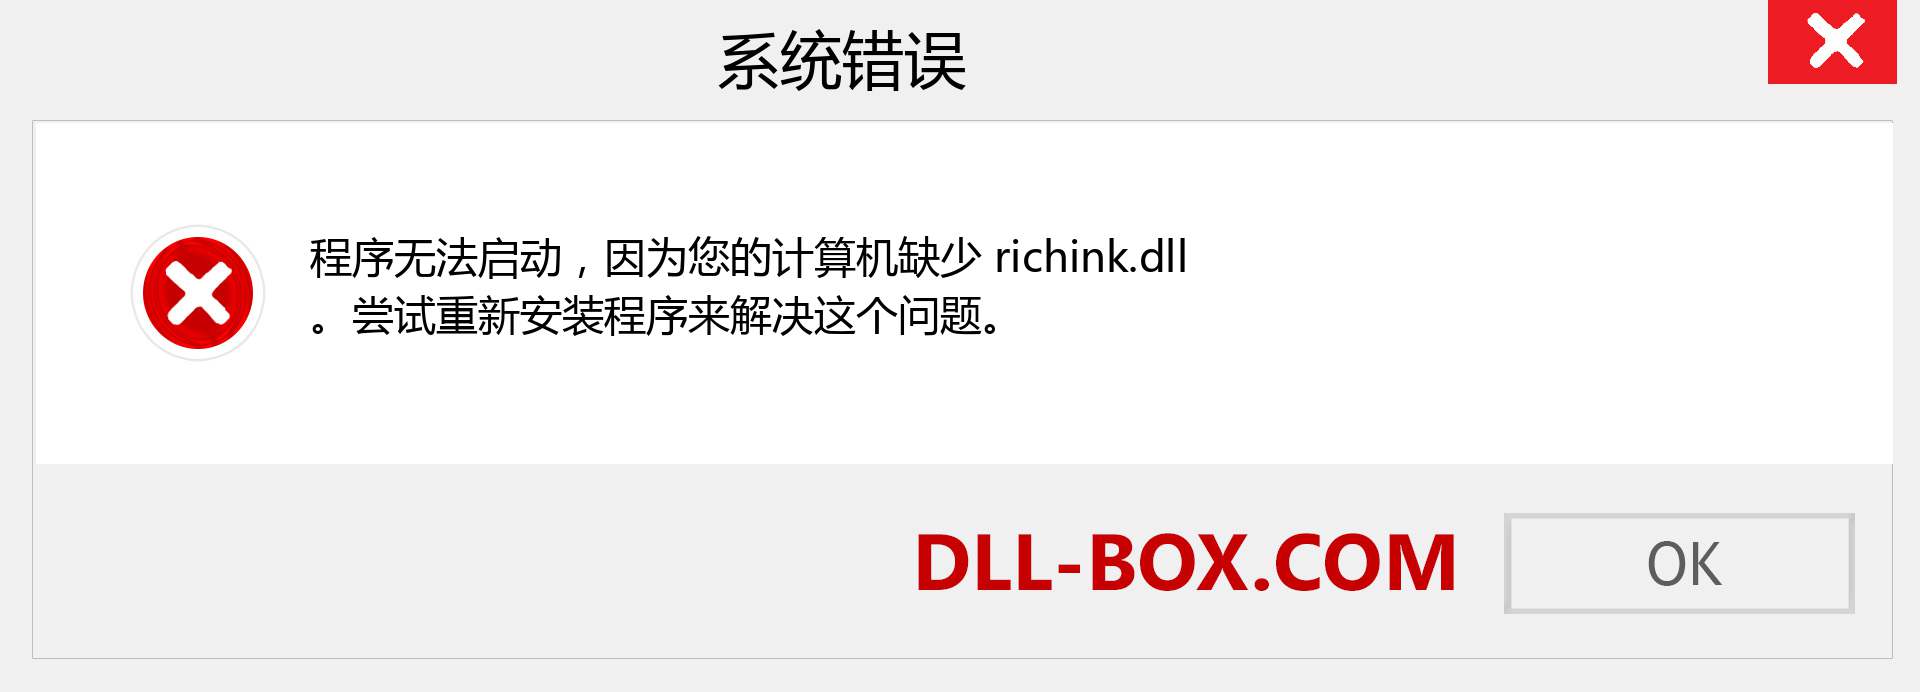 richink.dll 文件丢失？。 适用于 Windows 7、8、10 的下载 - 修复 Windows、照片、图像上的 richink dll 丢失错误